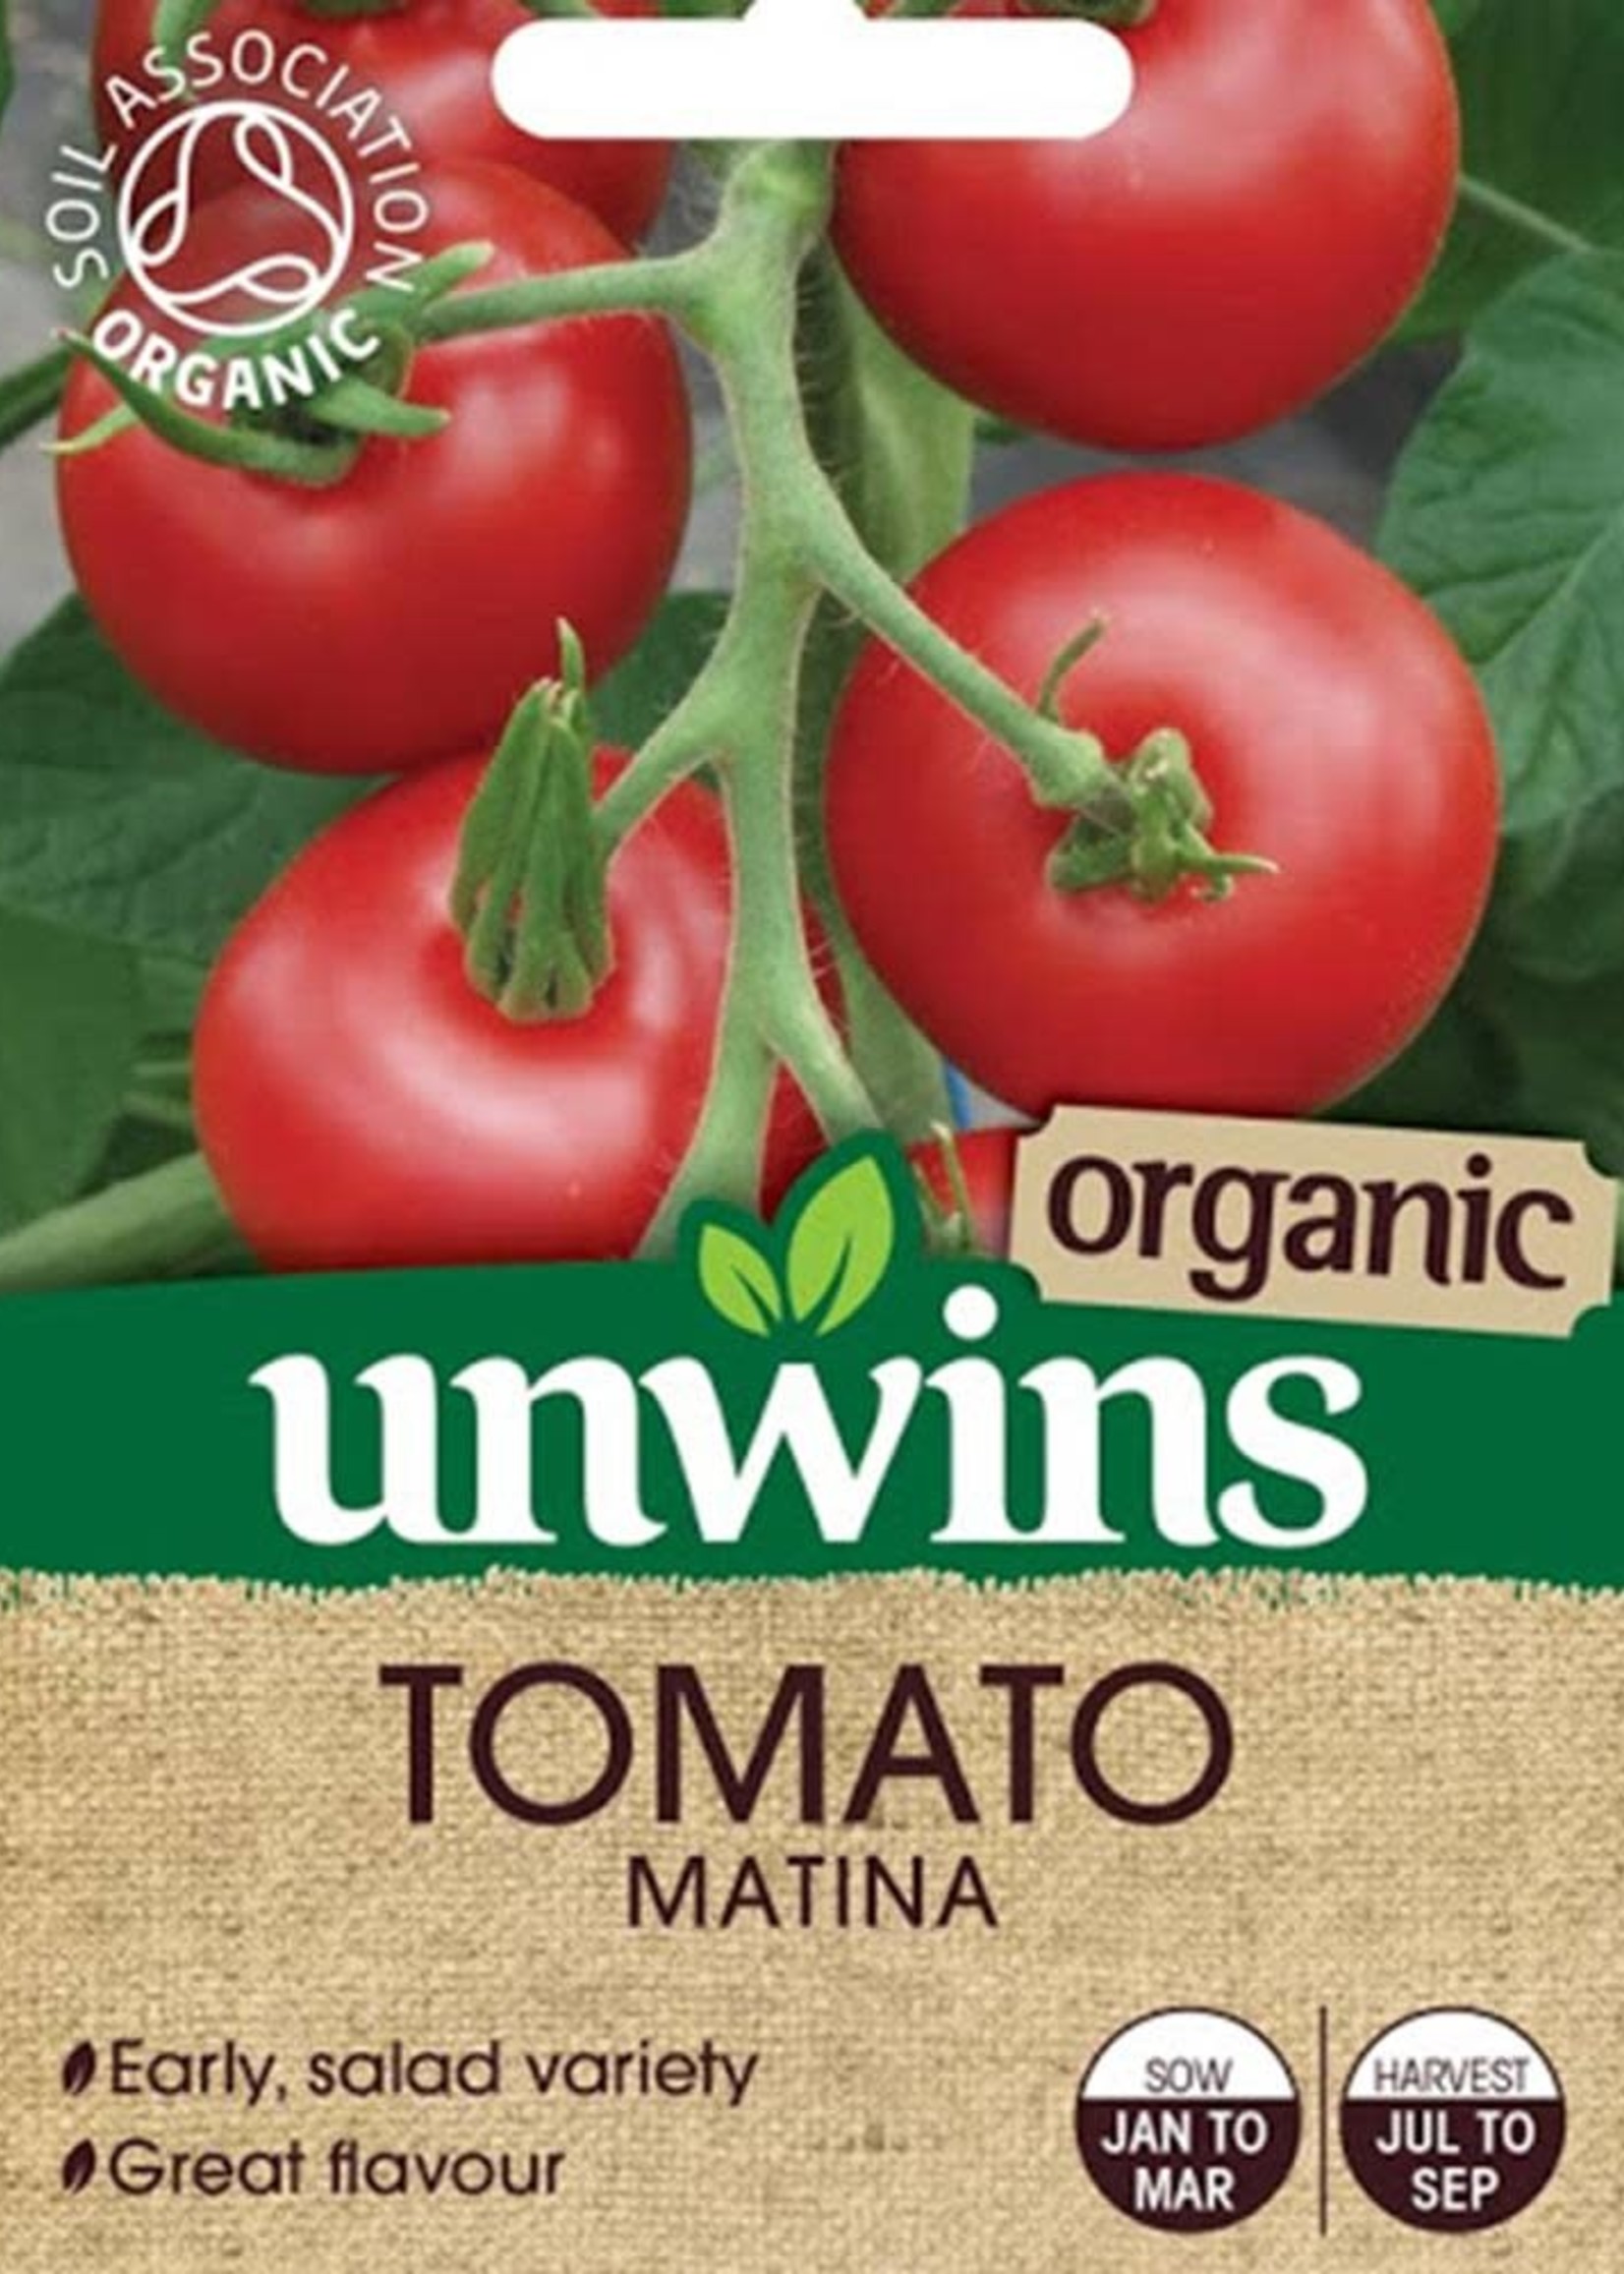 Unwins Organic Tomato - Matina